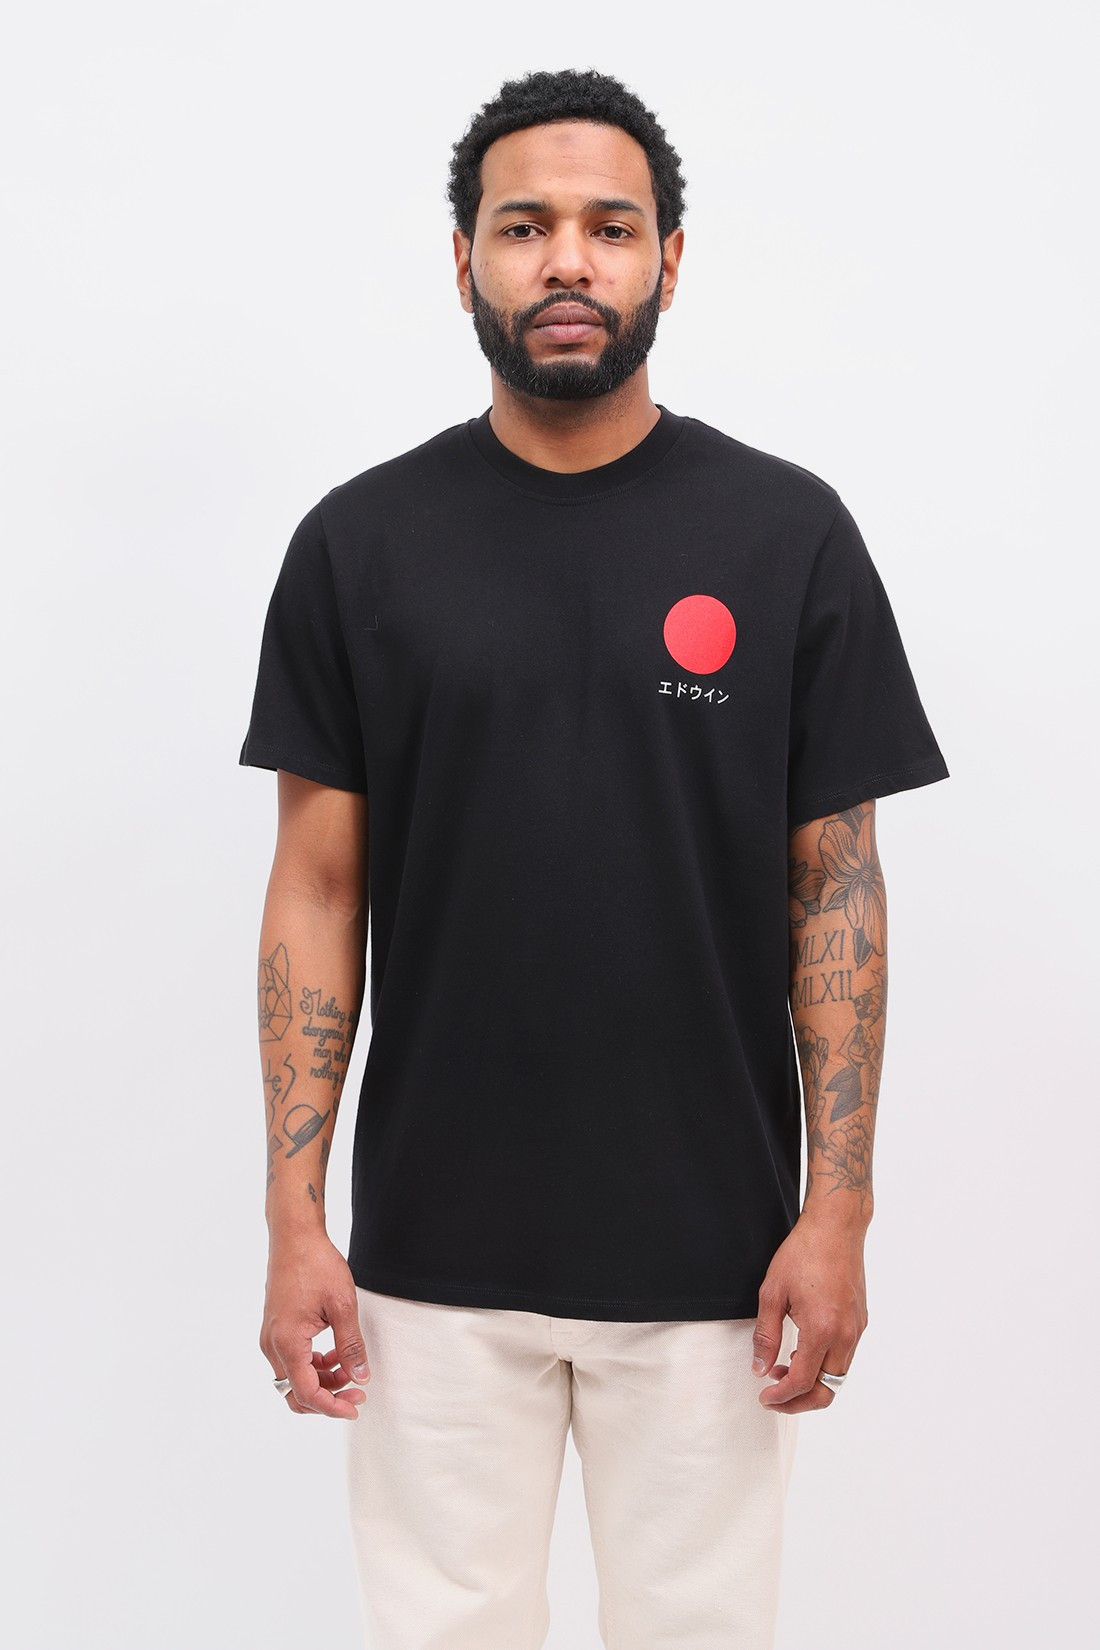 EDWIN / Japanese sun t-shirt Black